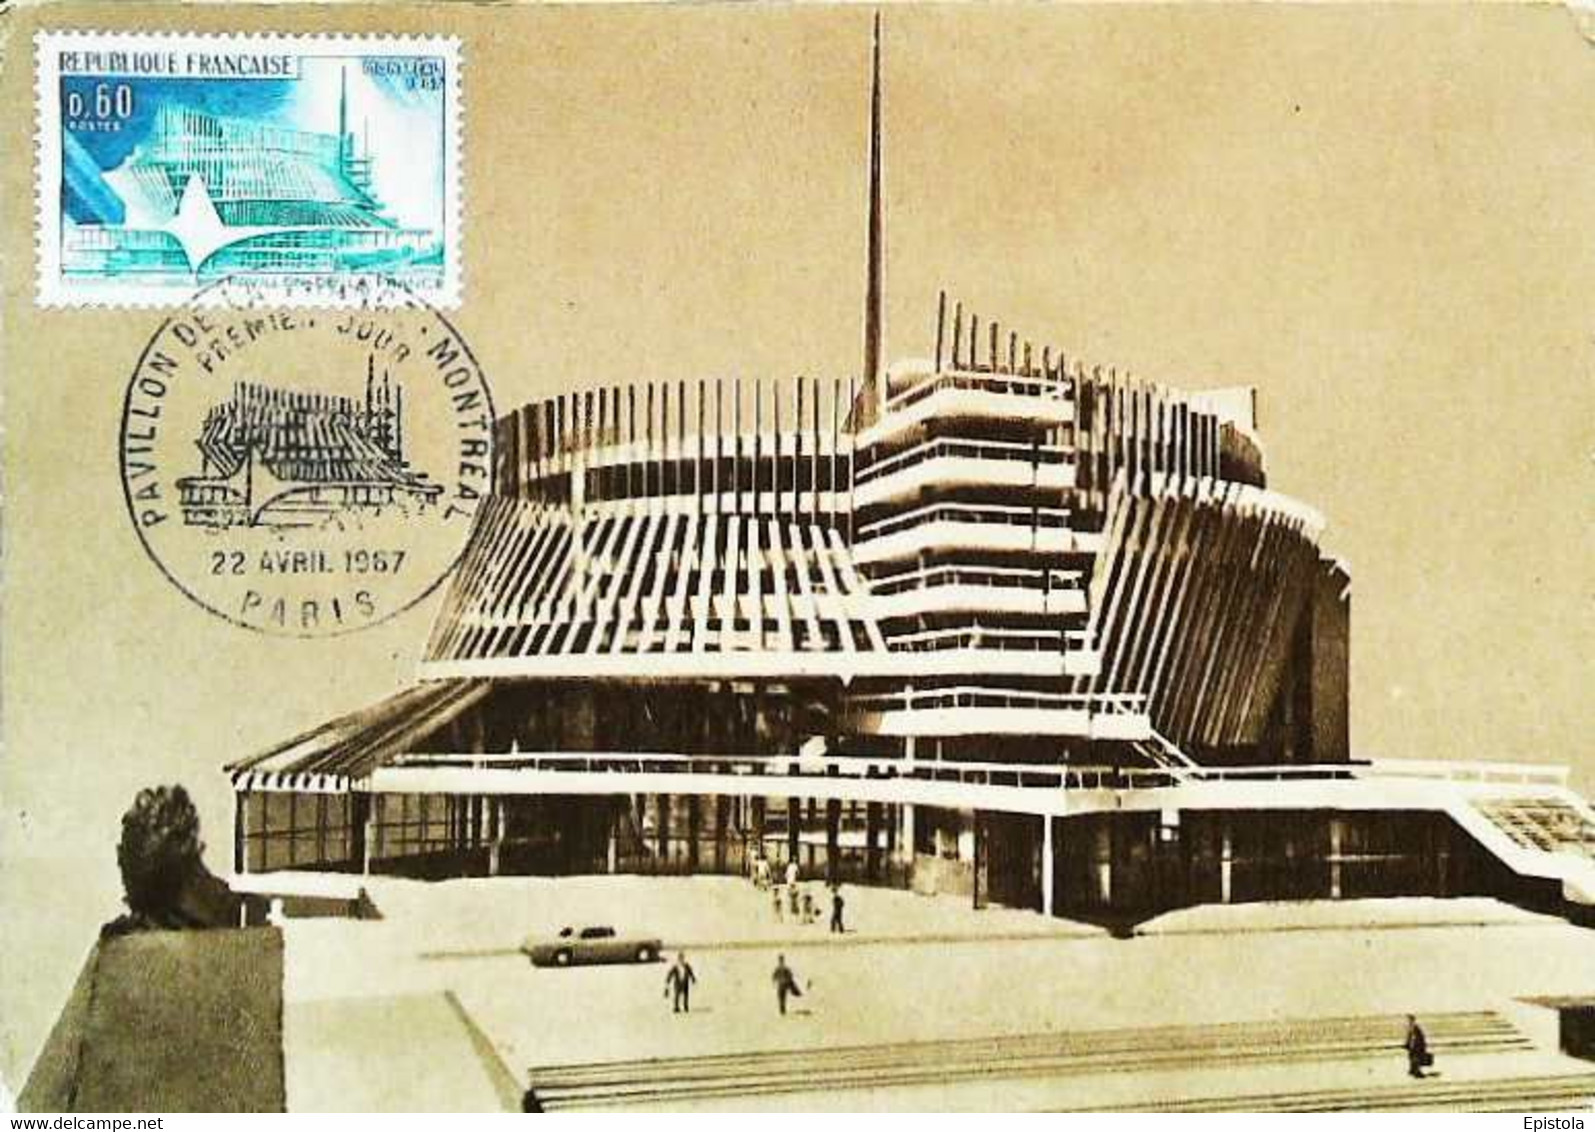 ► Exposition Universelle De Montréal 1967 - Carte Maximum Card ARCHITECTE M Jean Faugeron (Maquette Pavillon De France) - Maximumkaarten